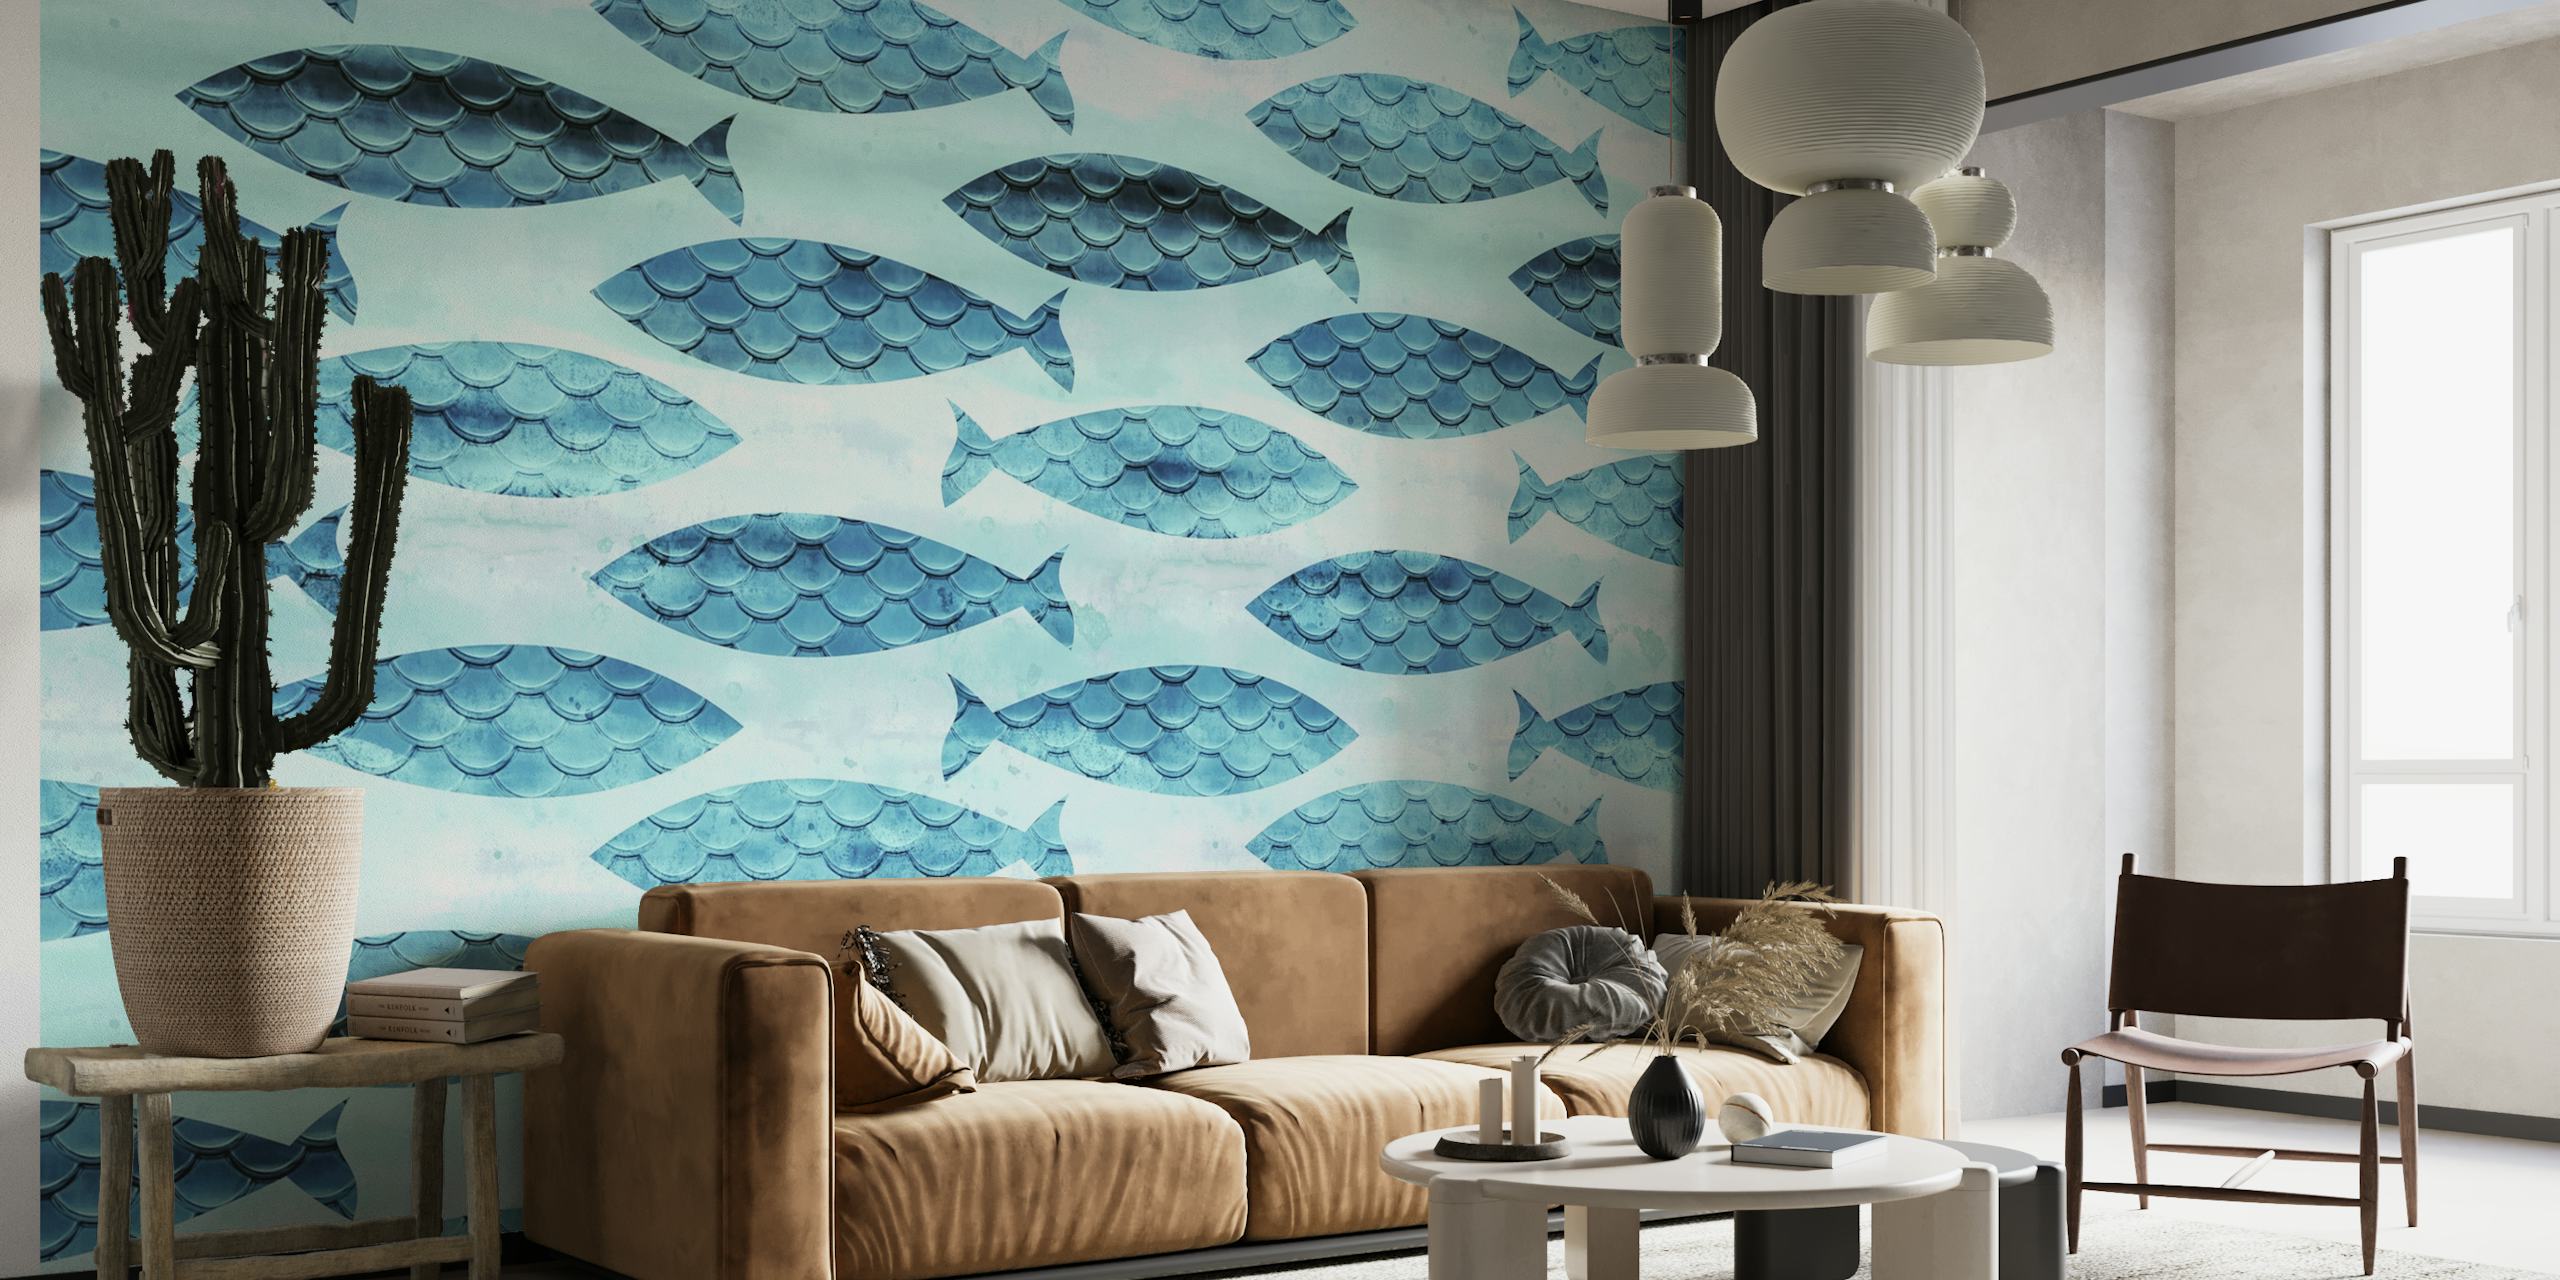 Fotomural vinílico de parede com padrão de peixe turquesa e branco para decoração de interiores